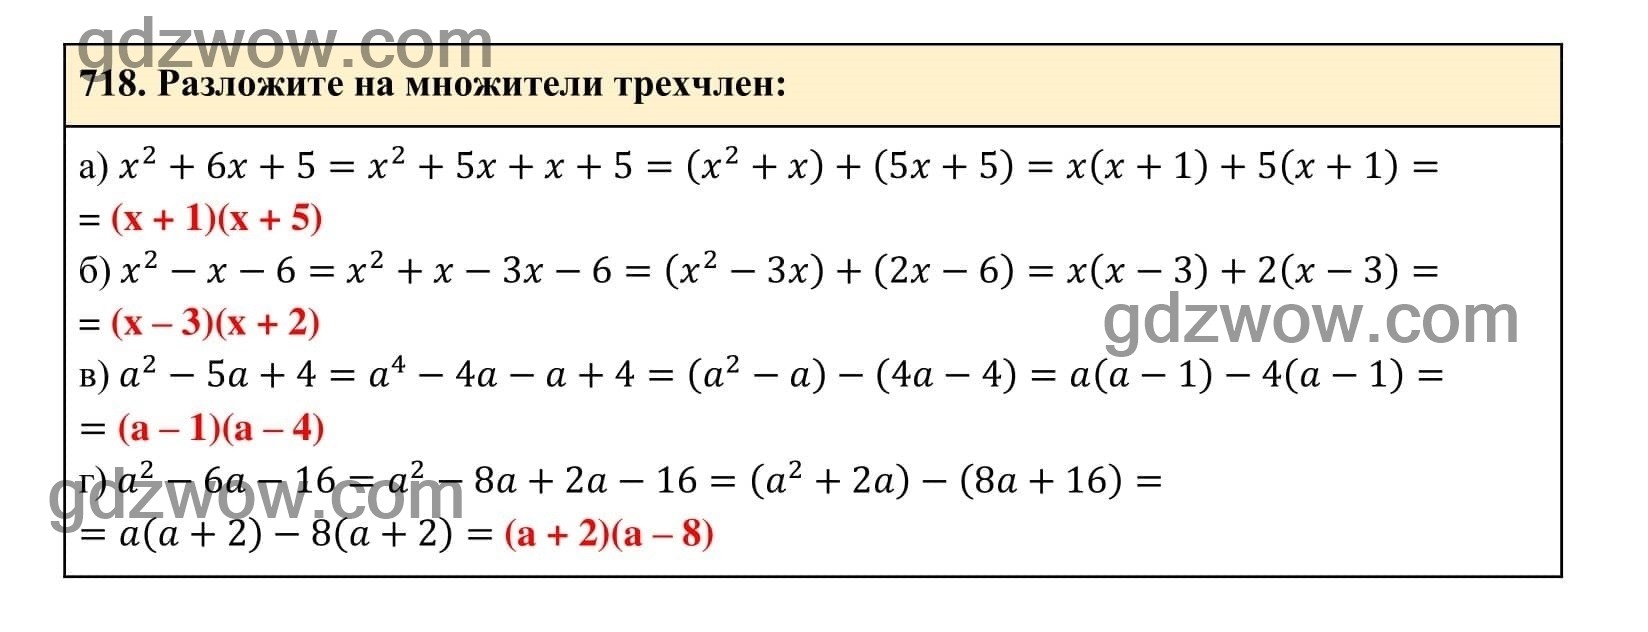 Упражнение 718 - ГДЗ по Алгебре 7 класс Учебник Макарычев (решебник) - GDZwow